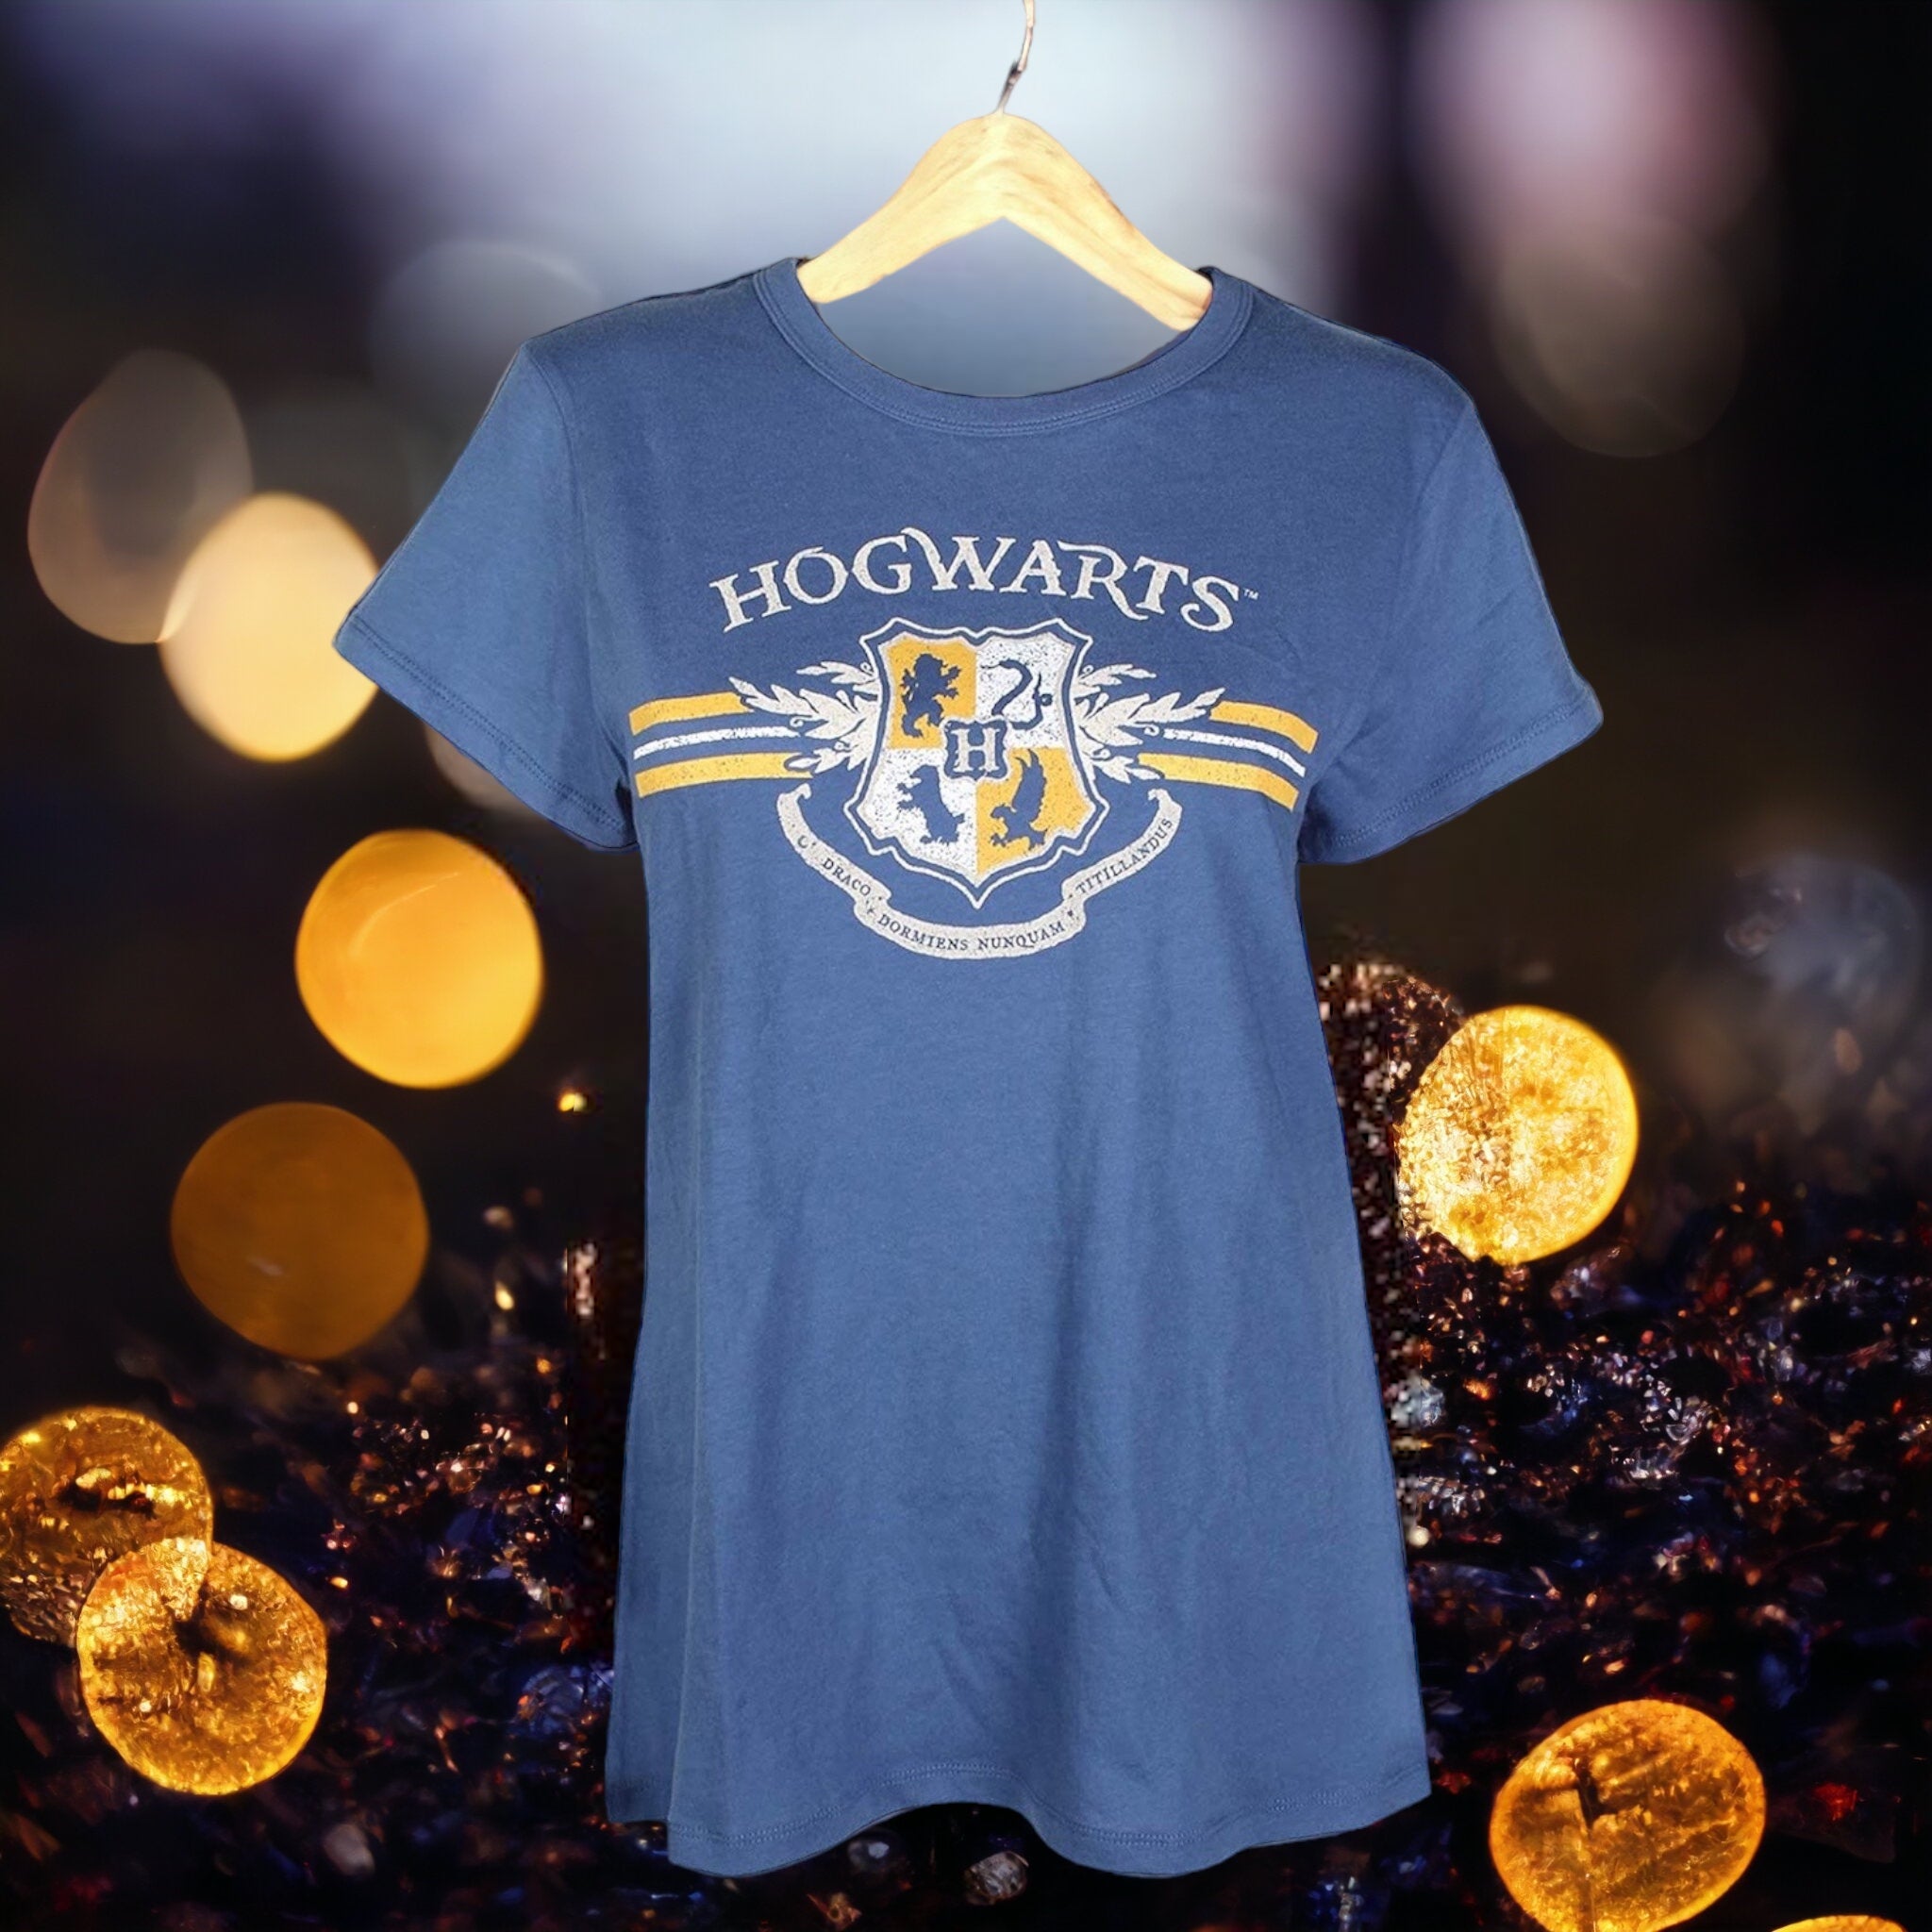 Short Juniors Hogwarts Navy Lonestar Sleeve T-Shirt Size Finds – Harry Potter Tee Crest